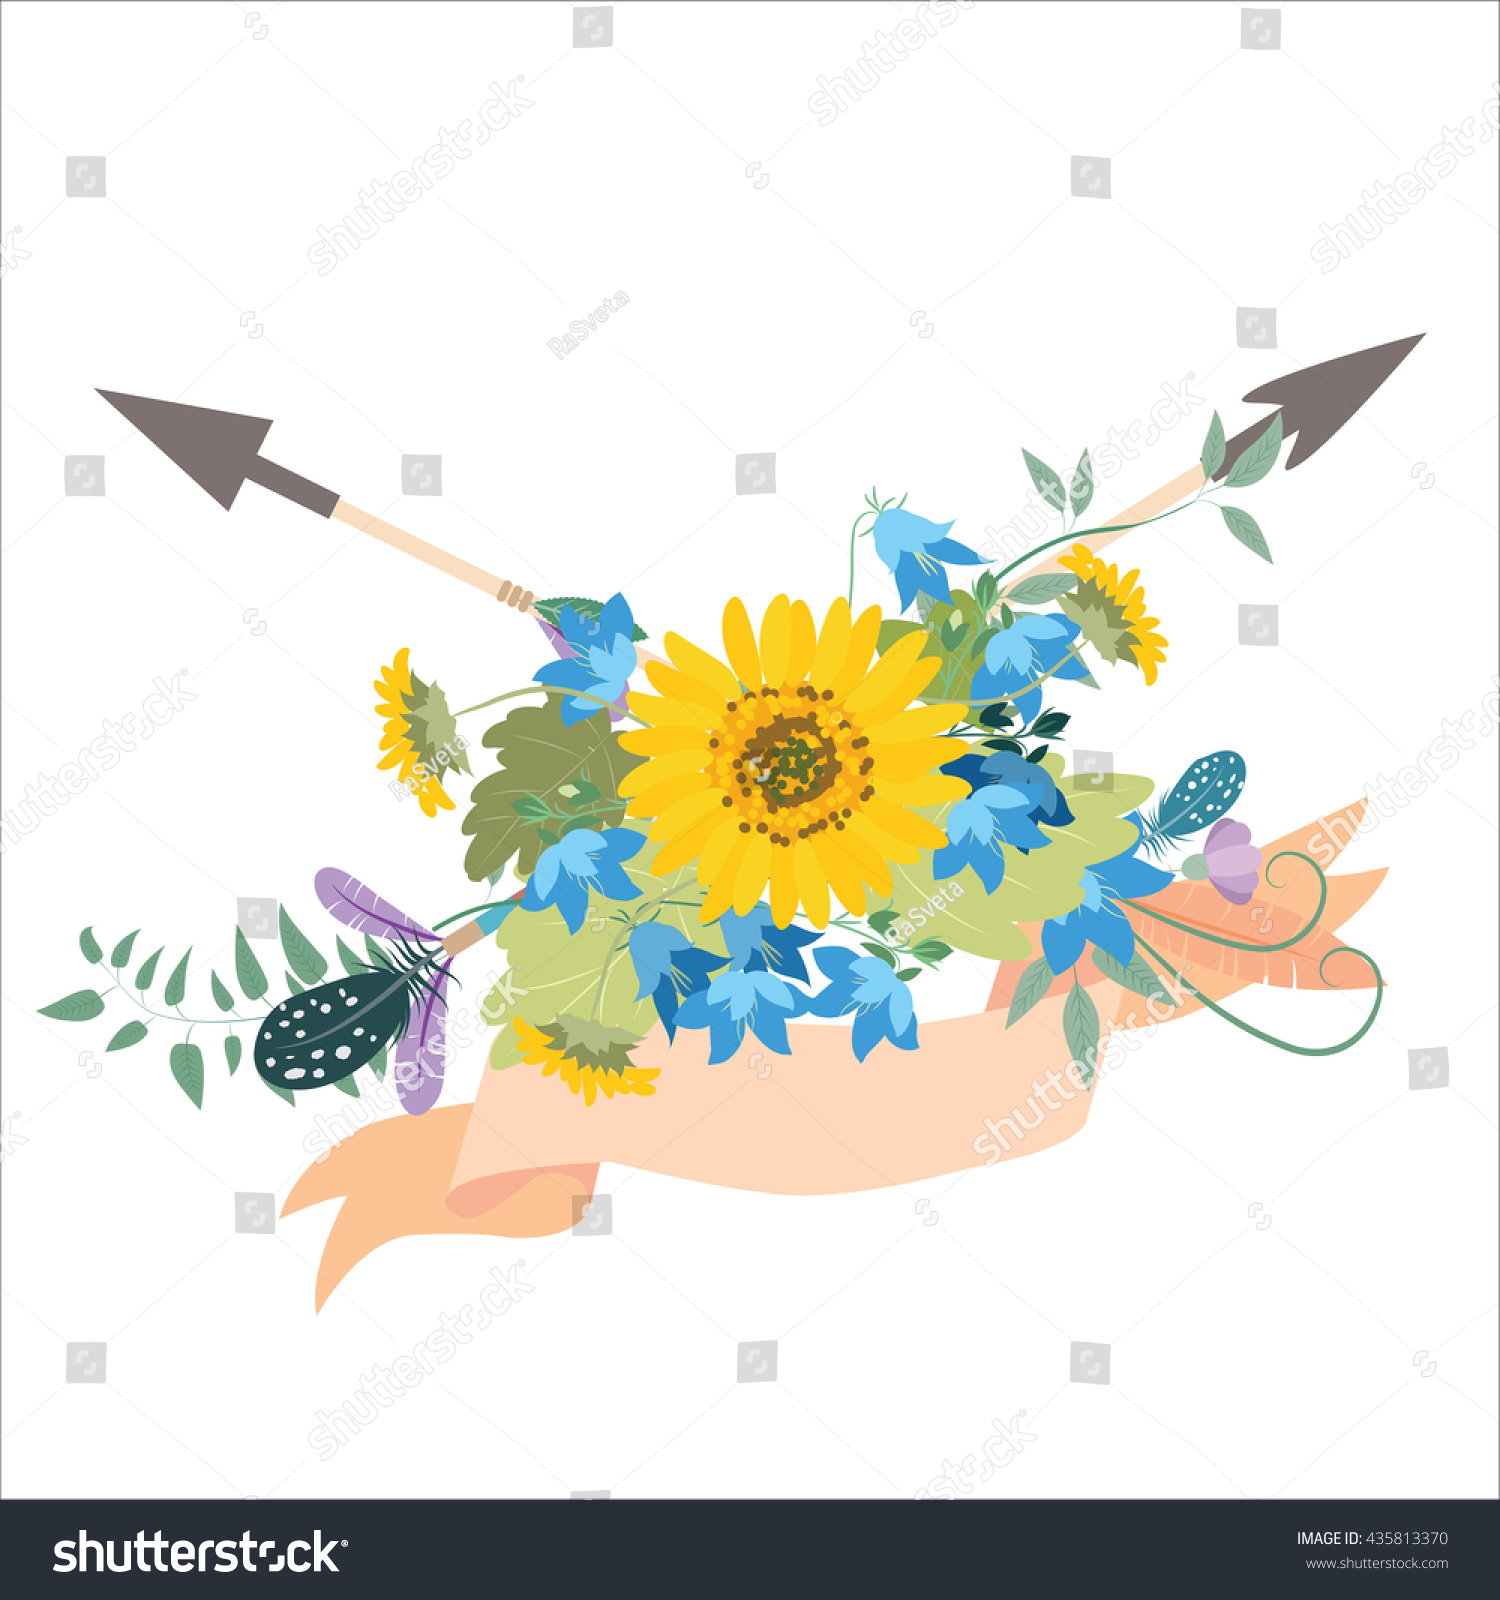 Edit Vectors Free Online - Flower arrangement | Shutterstock Editor